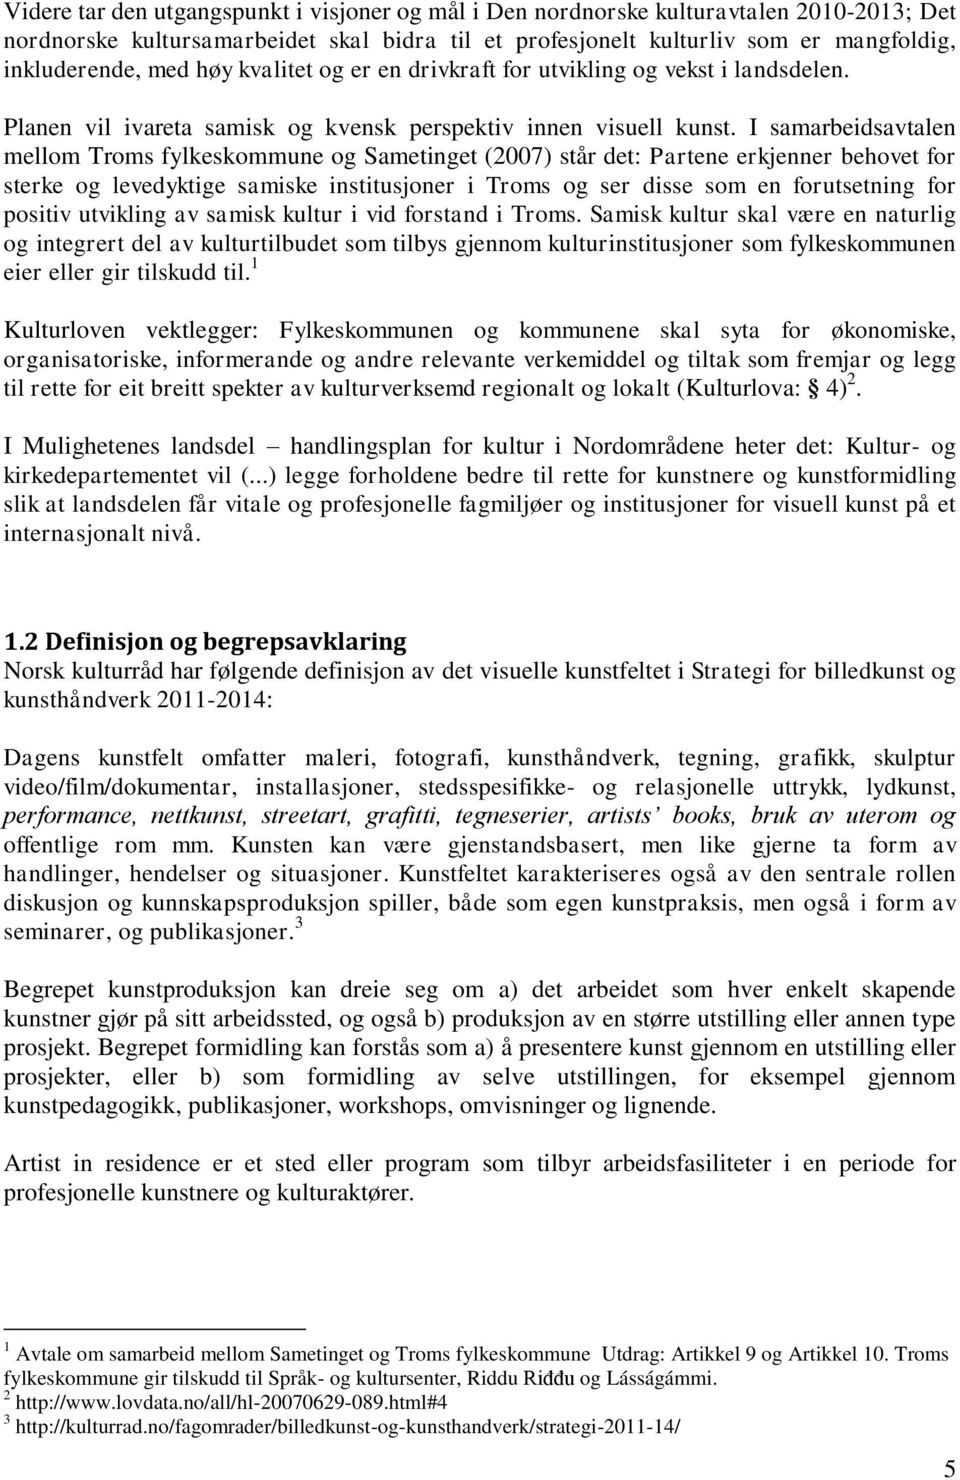 I samarbeidsavtalen mellom Troms fylkeskommune og Sametinget (2007) står det: Partene erkjenner behovet for sterke og levedyktige samiske institusjoner i Troms og ser disse som en forutsetning for